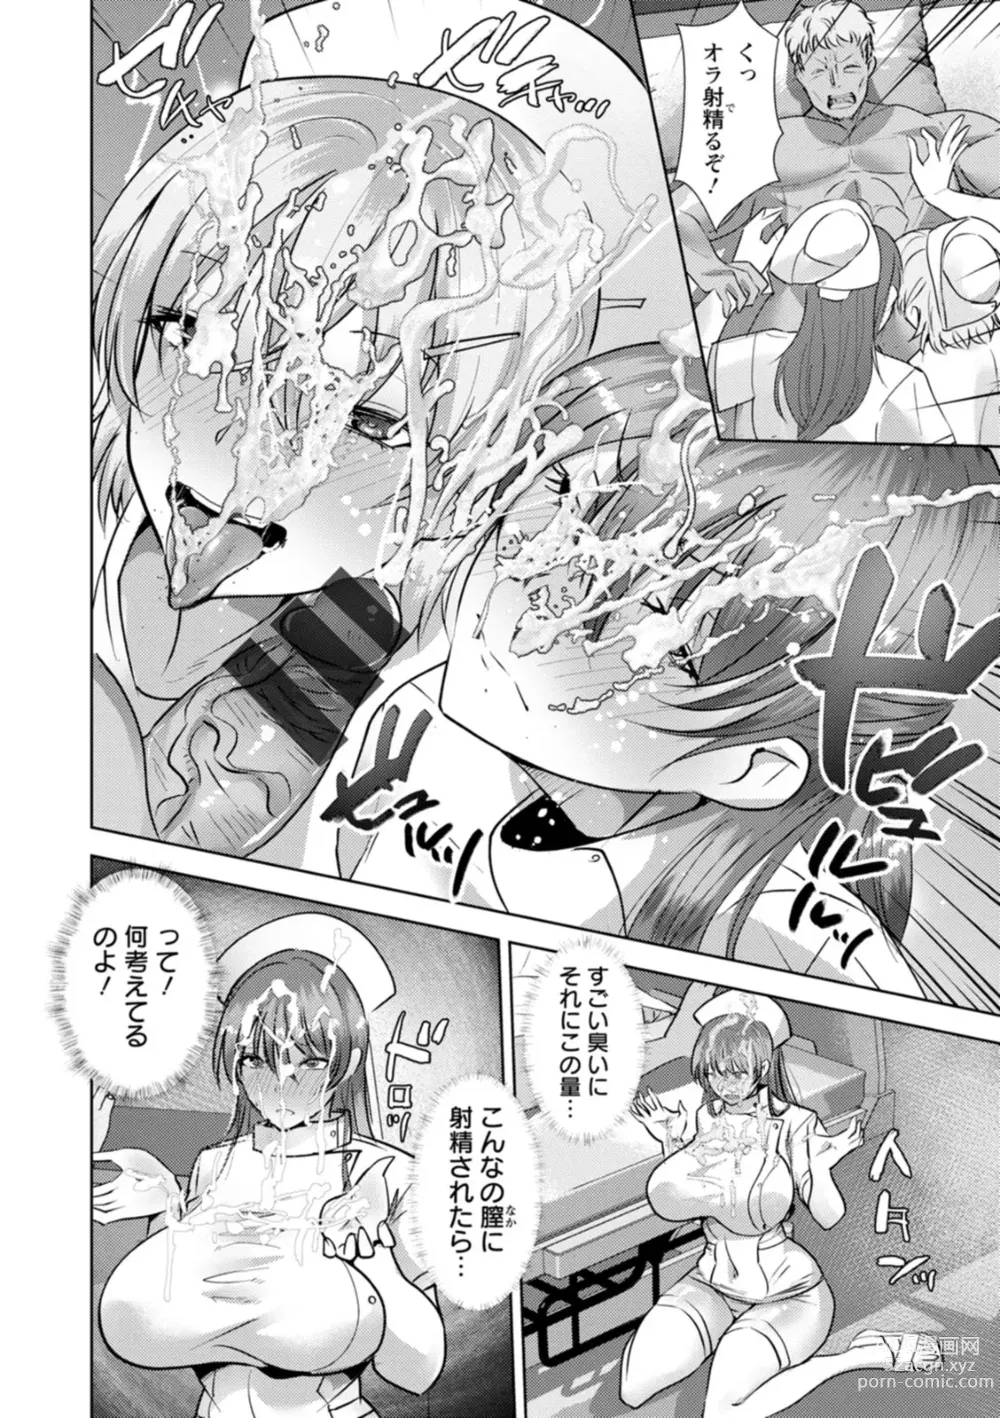 Page 174 of manga Mesuana Dochun!